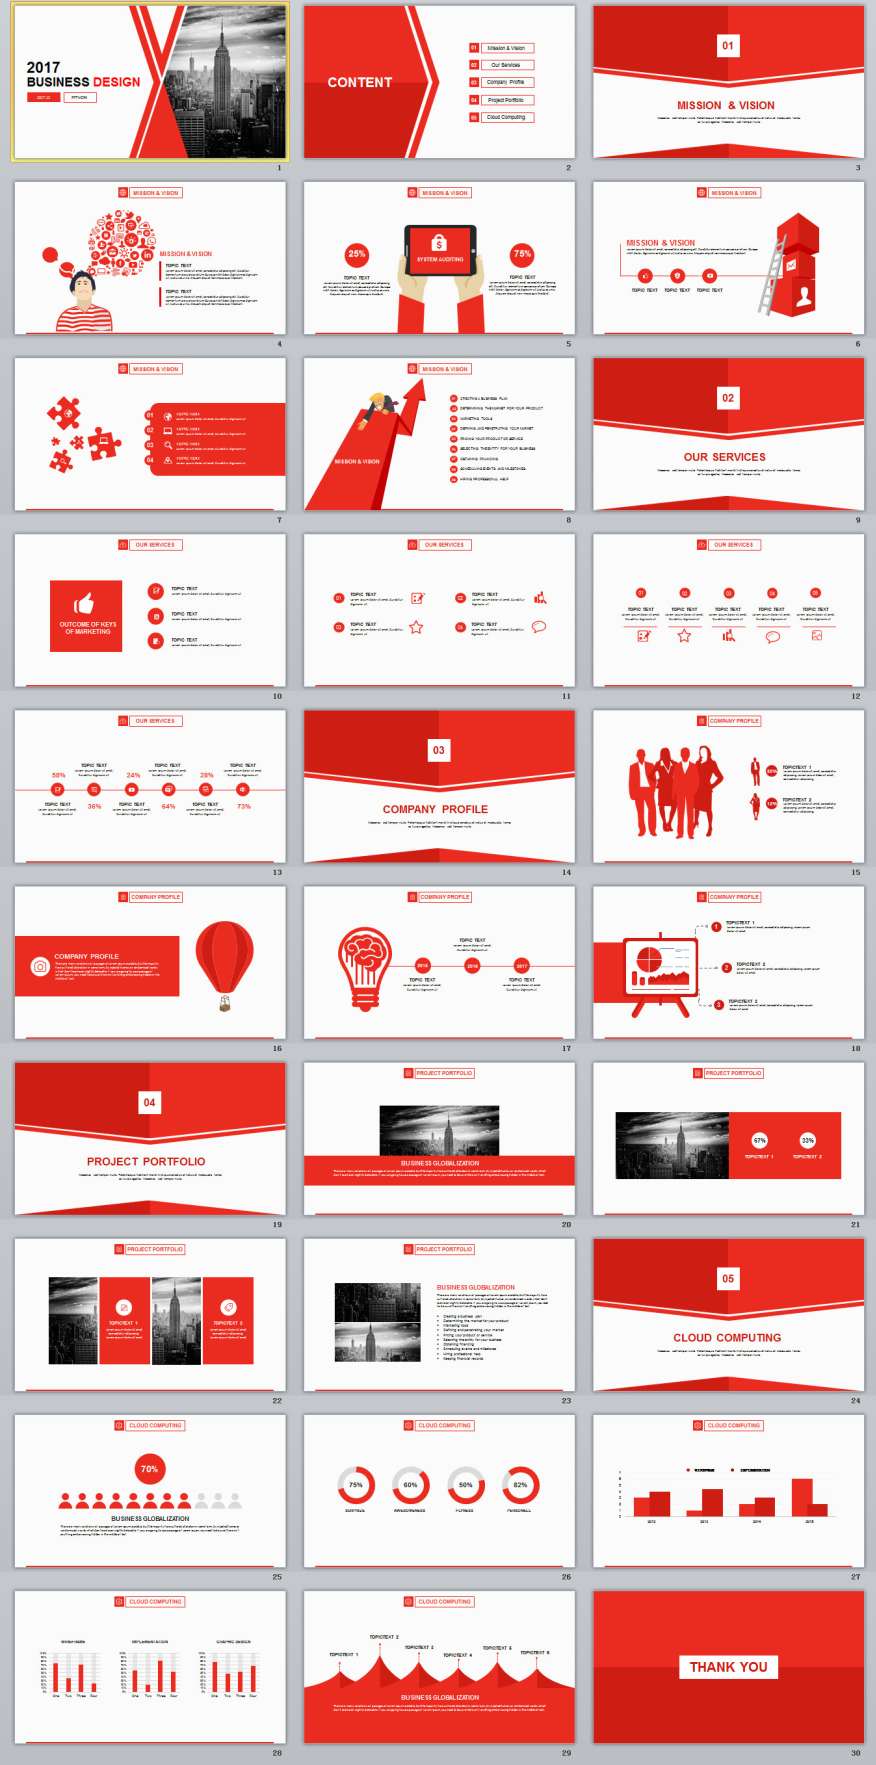 Rekomendasi Template PowerPoint Red Terkini Dalam Membuat Presentasi dengan Menarik